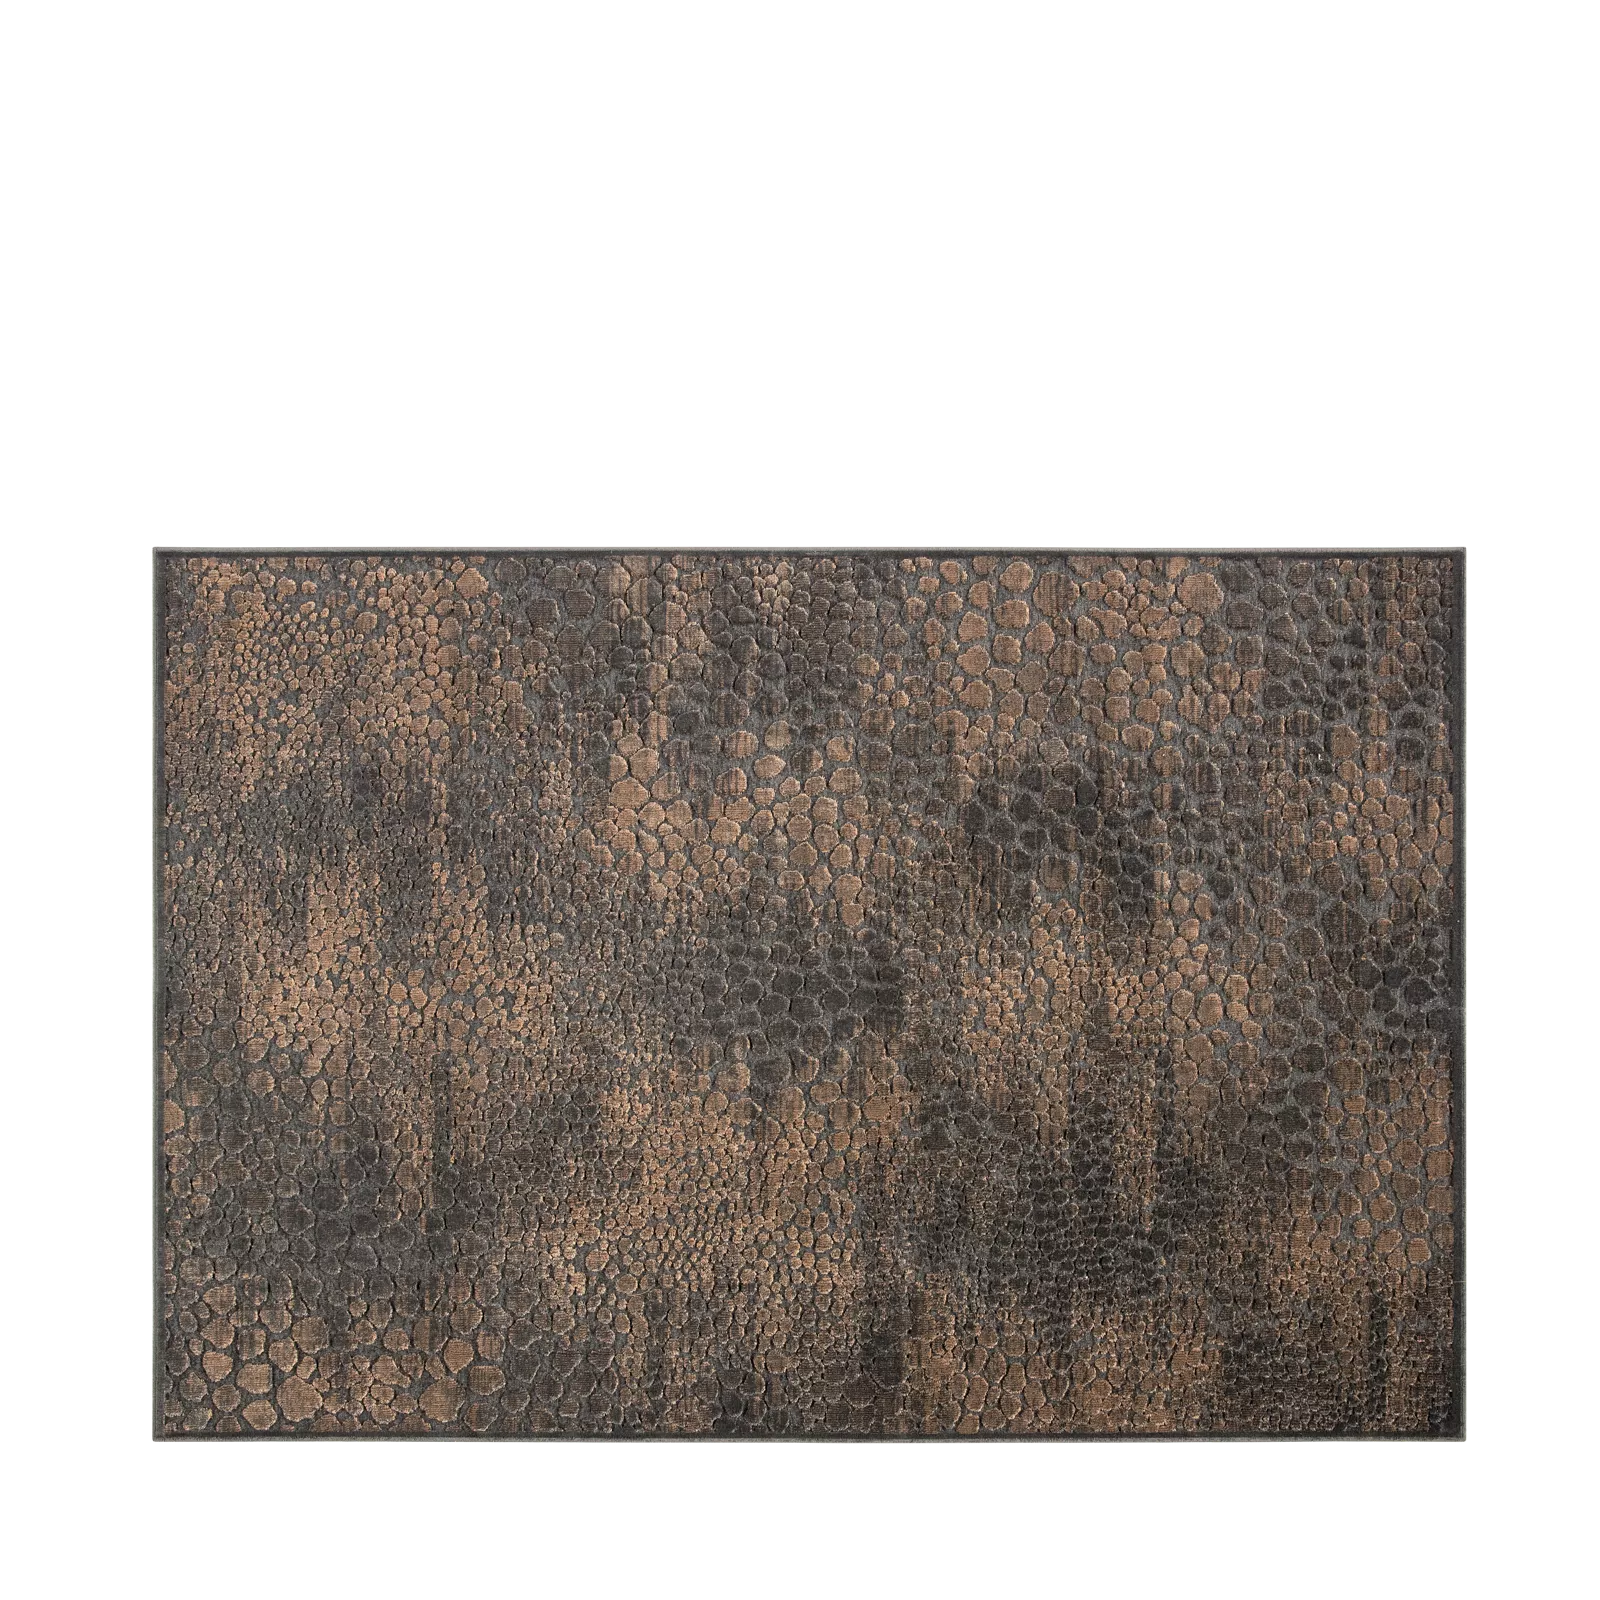 Vloerkleed (200x300cm) Avila - Brown/Black